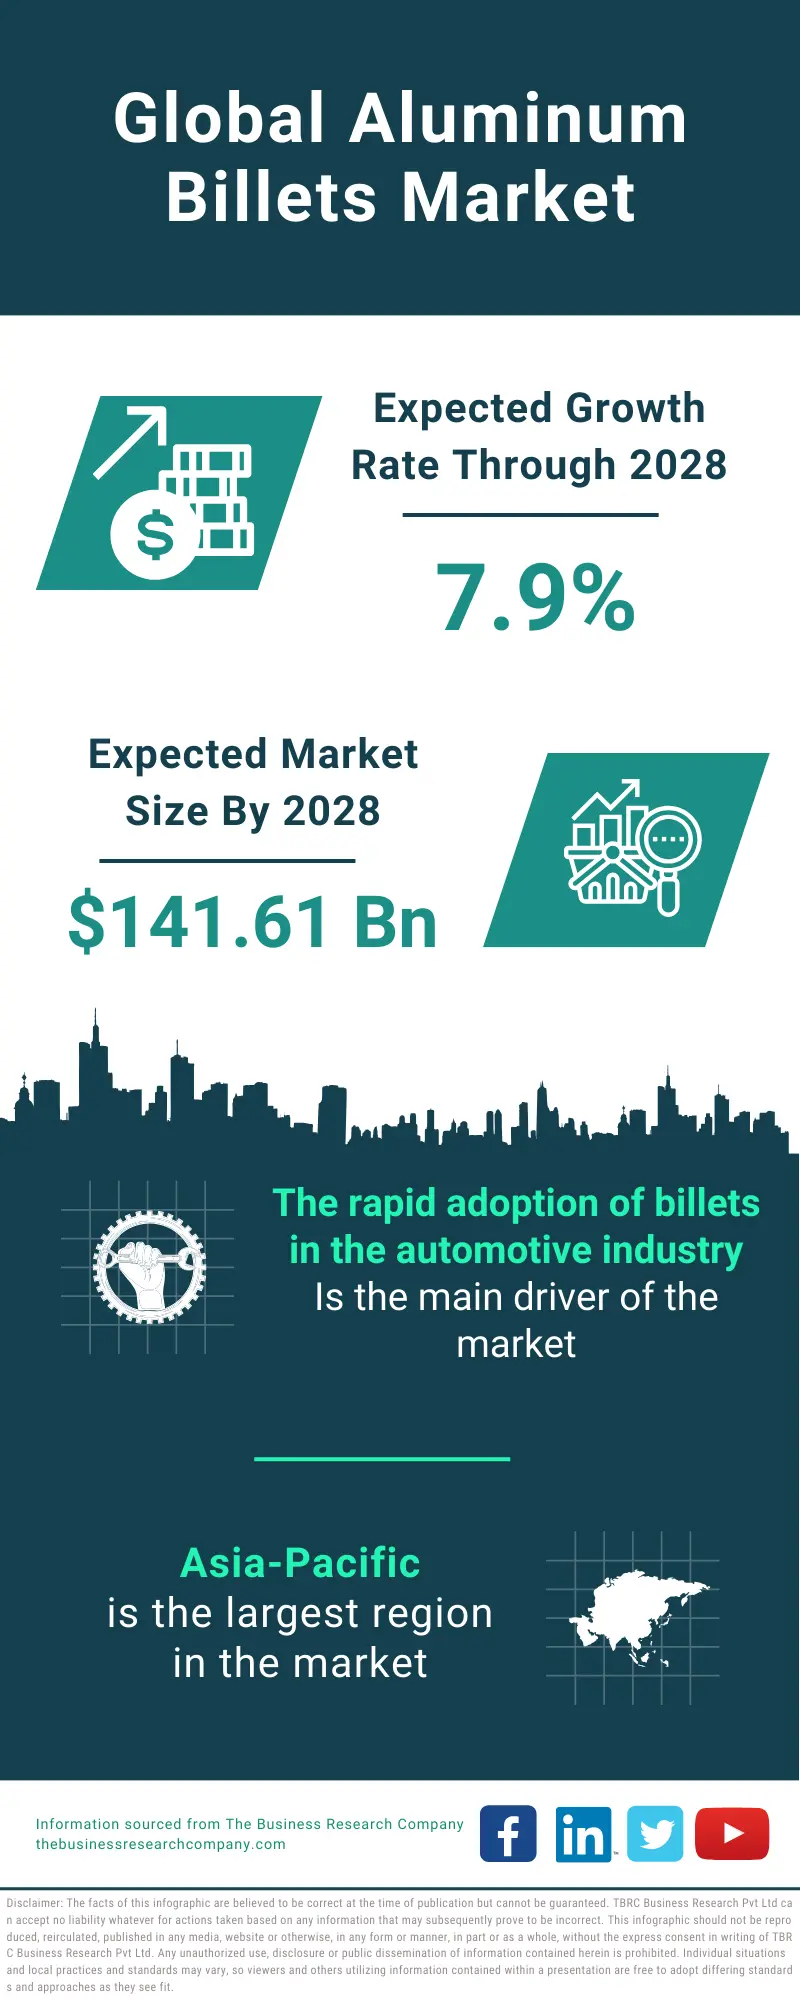 Aluminum Billets Global Market Report 2024 